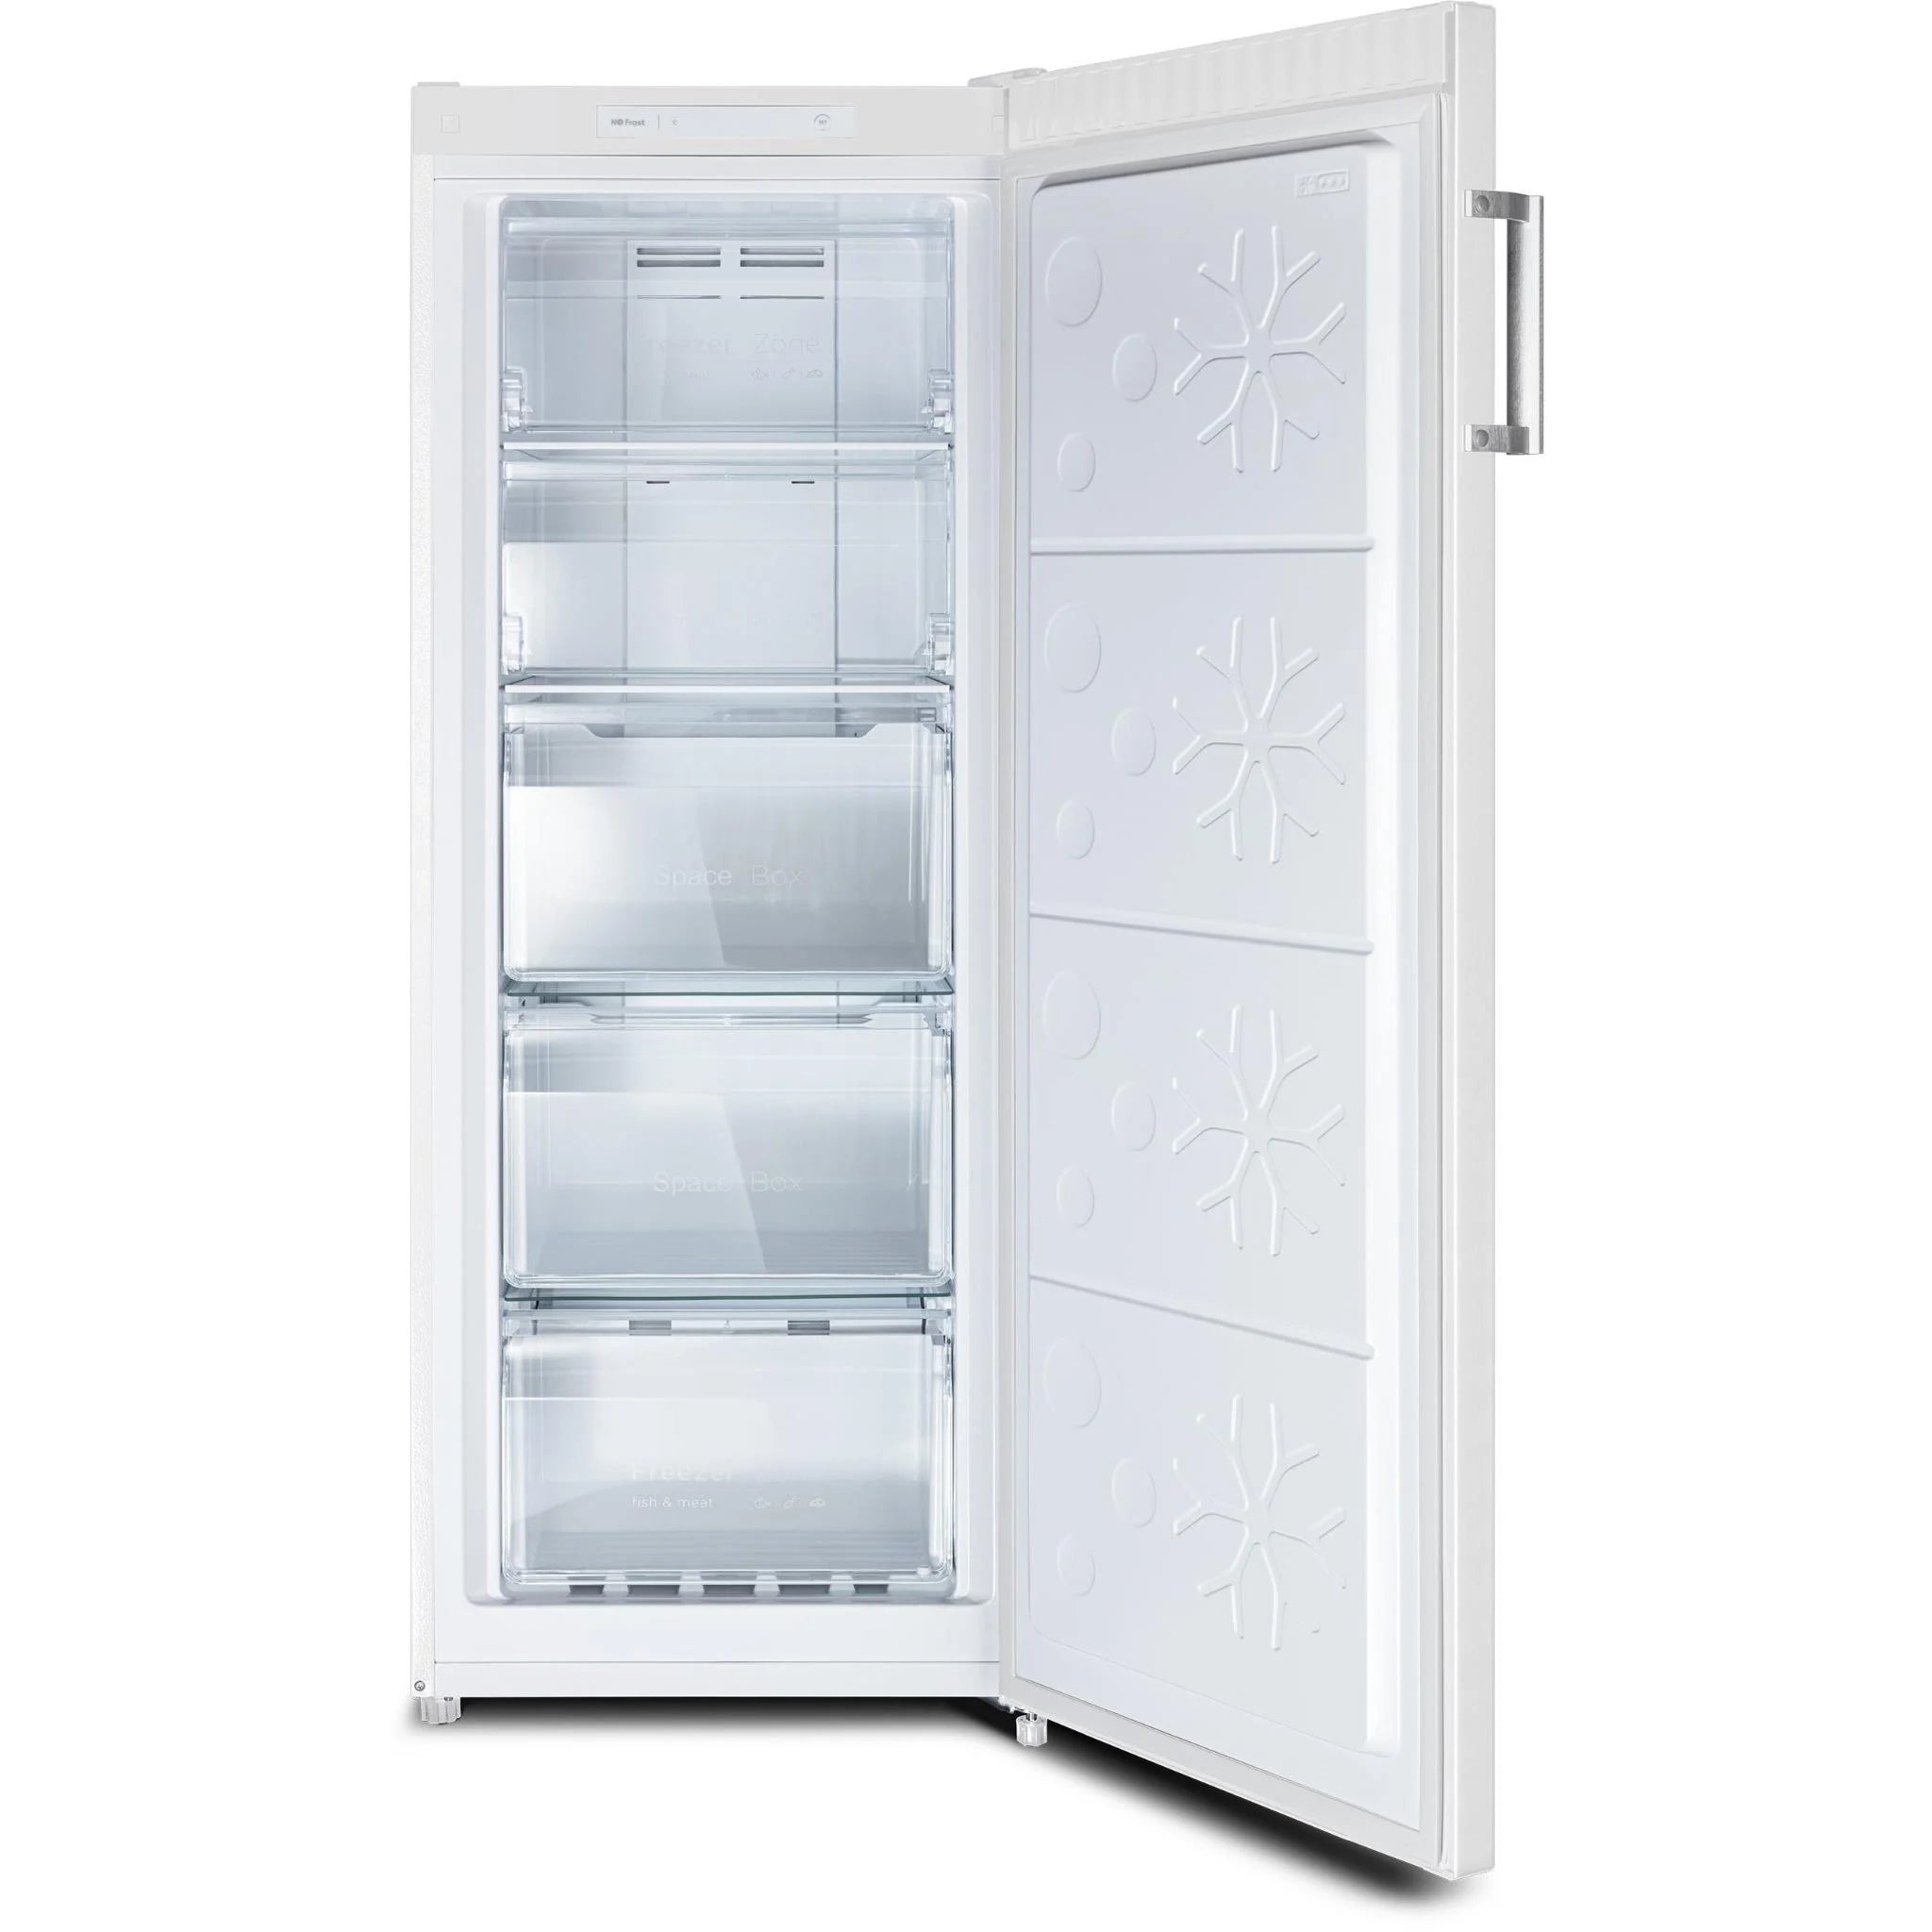 CHiQ 166L Frost-Free Upright Freezer (White)